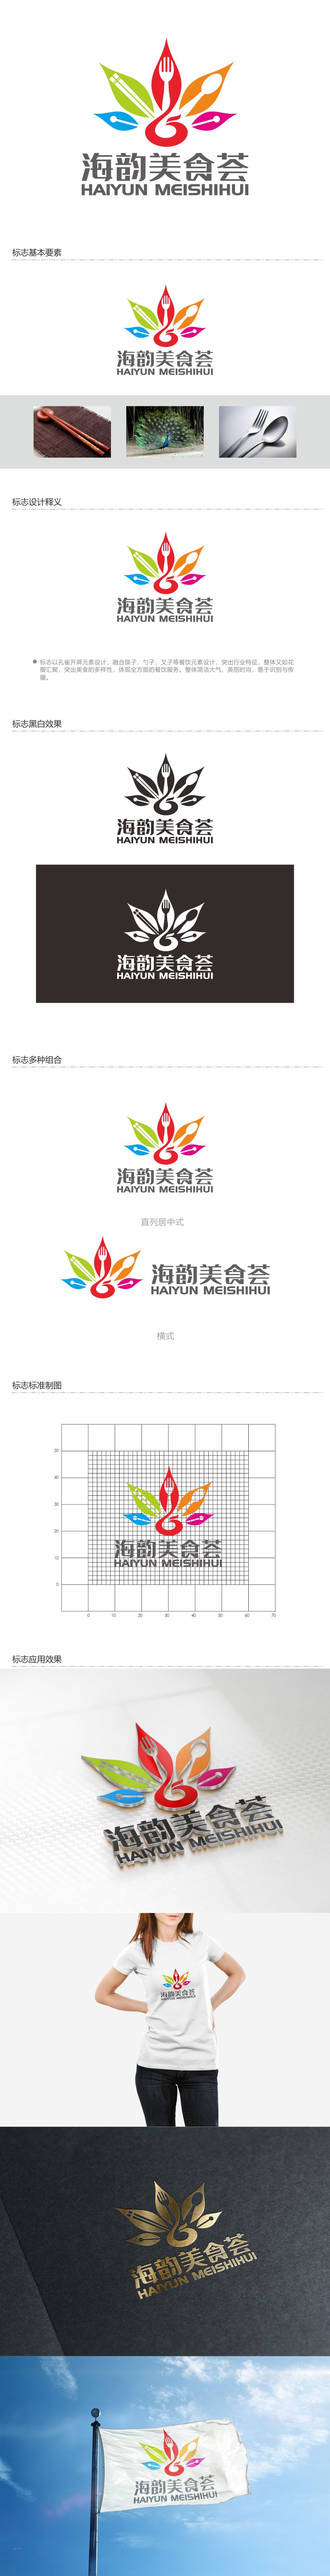 何嘉健的海韵美食荟logo设计